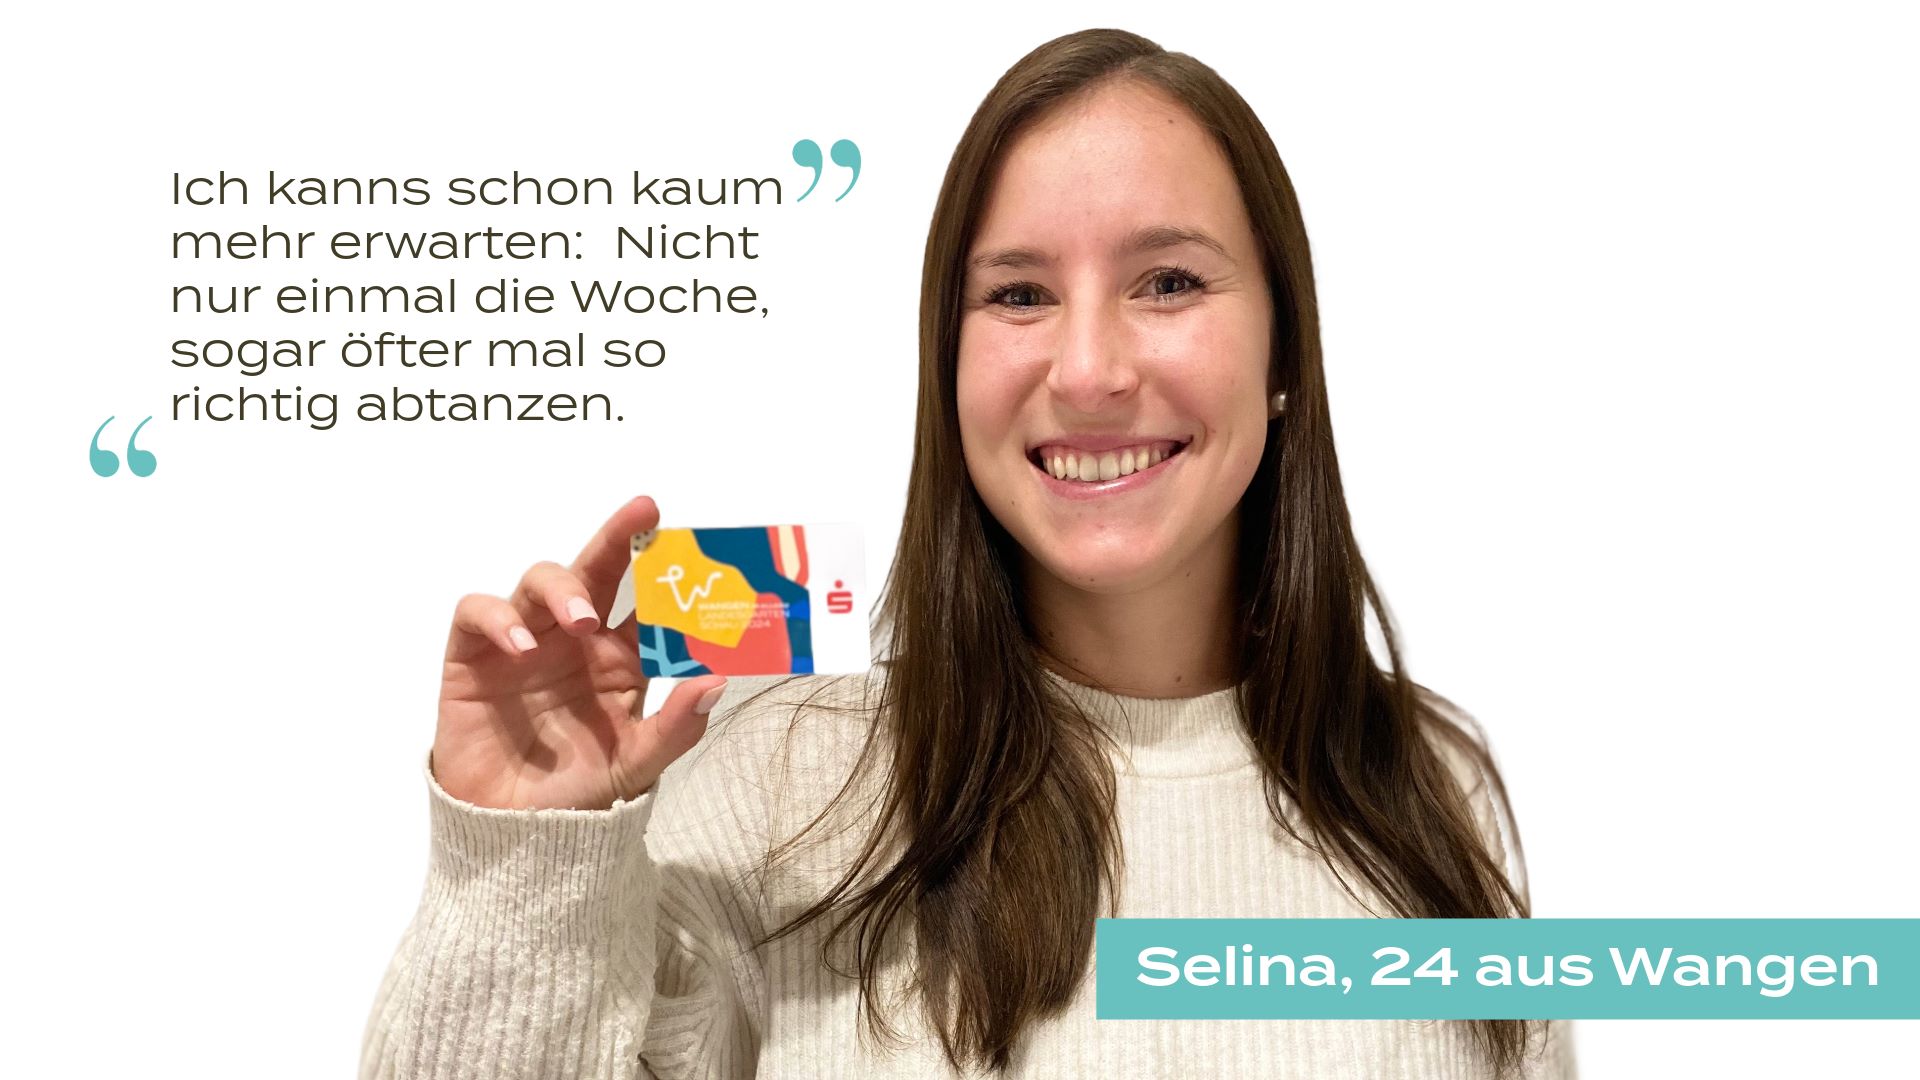 Selina zeigt ihre Dauerkarte in die Kamera. ©Landesgartenschau Wangen